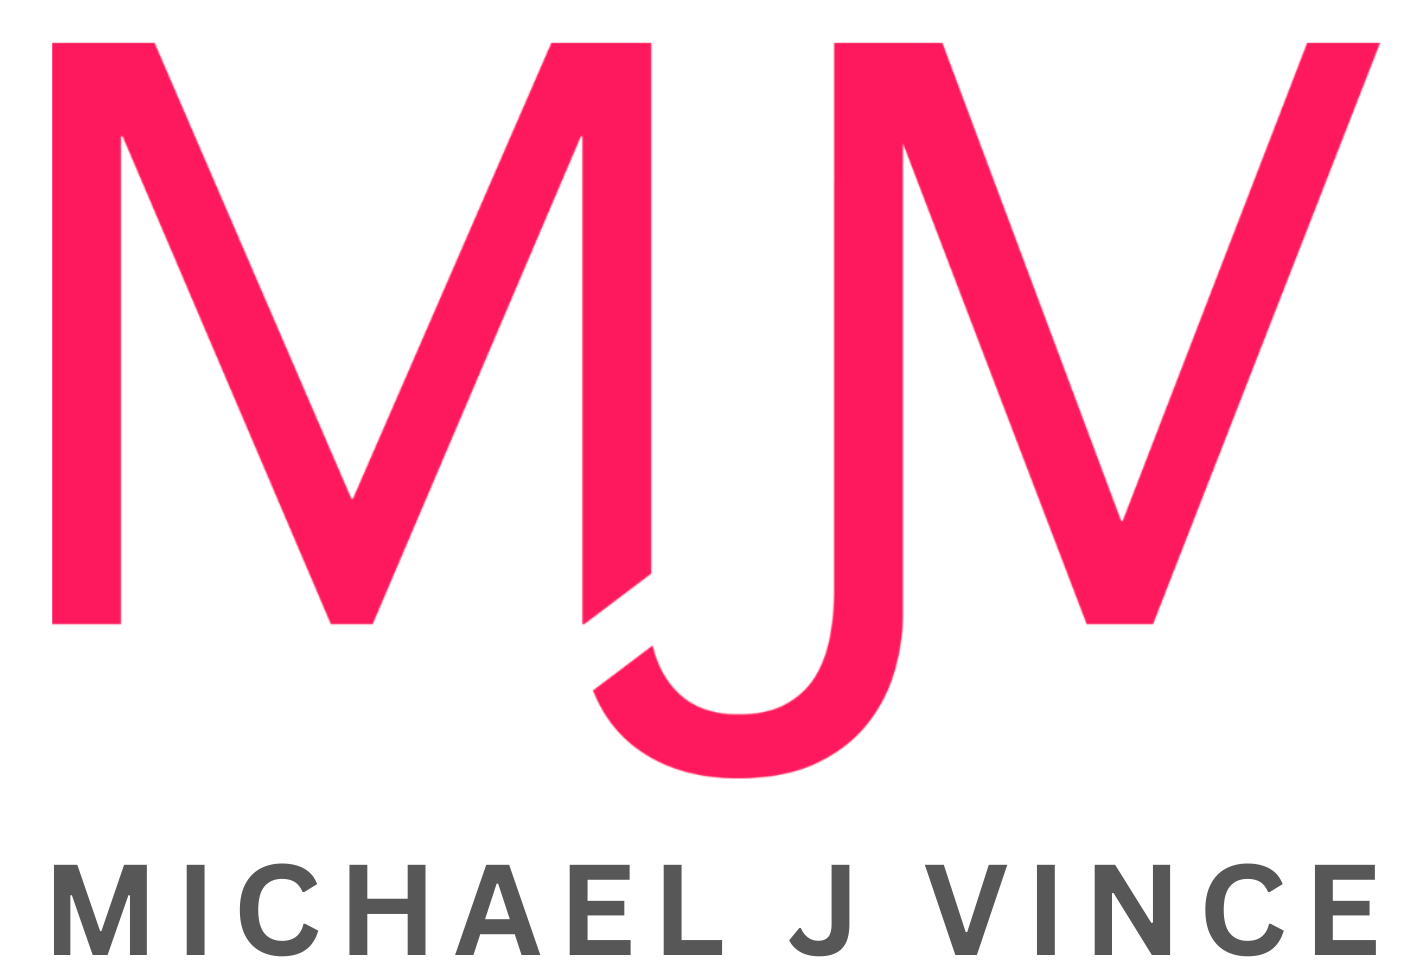 MICHAEL J VINCE